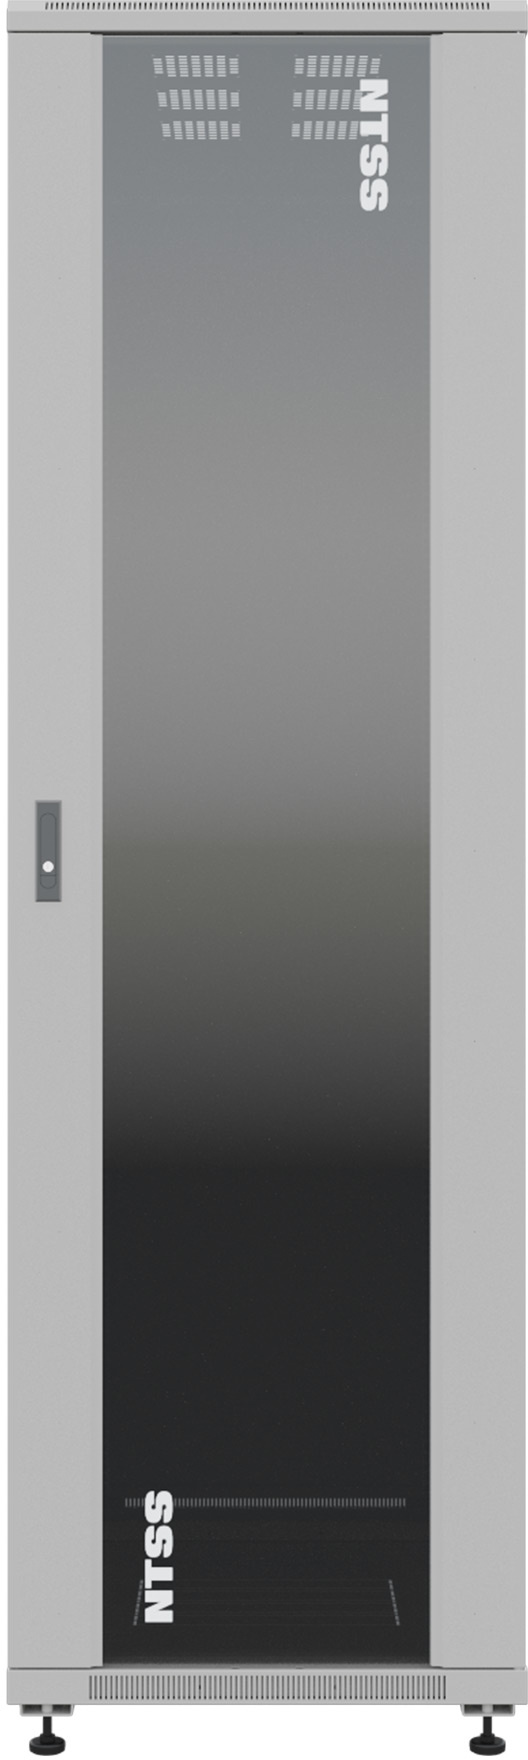 Напольный шкаф NTSS Премиум 22U серый, NTSS-R22U60100GS